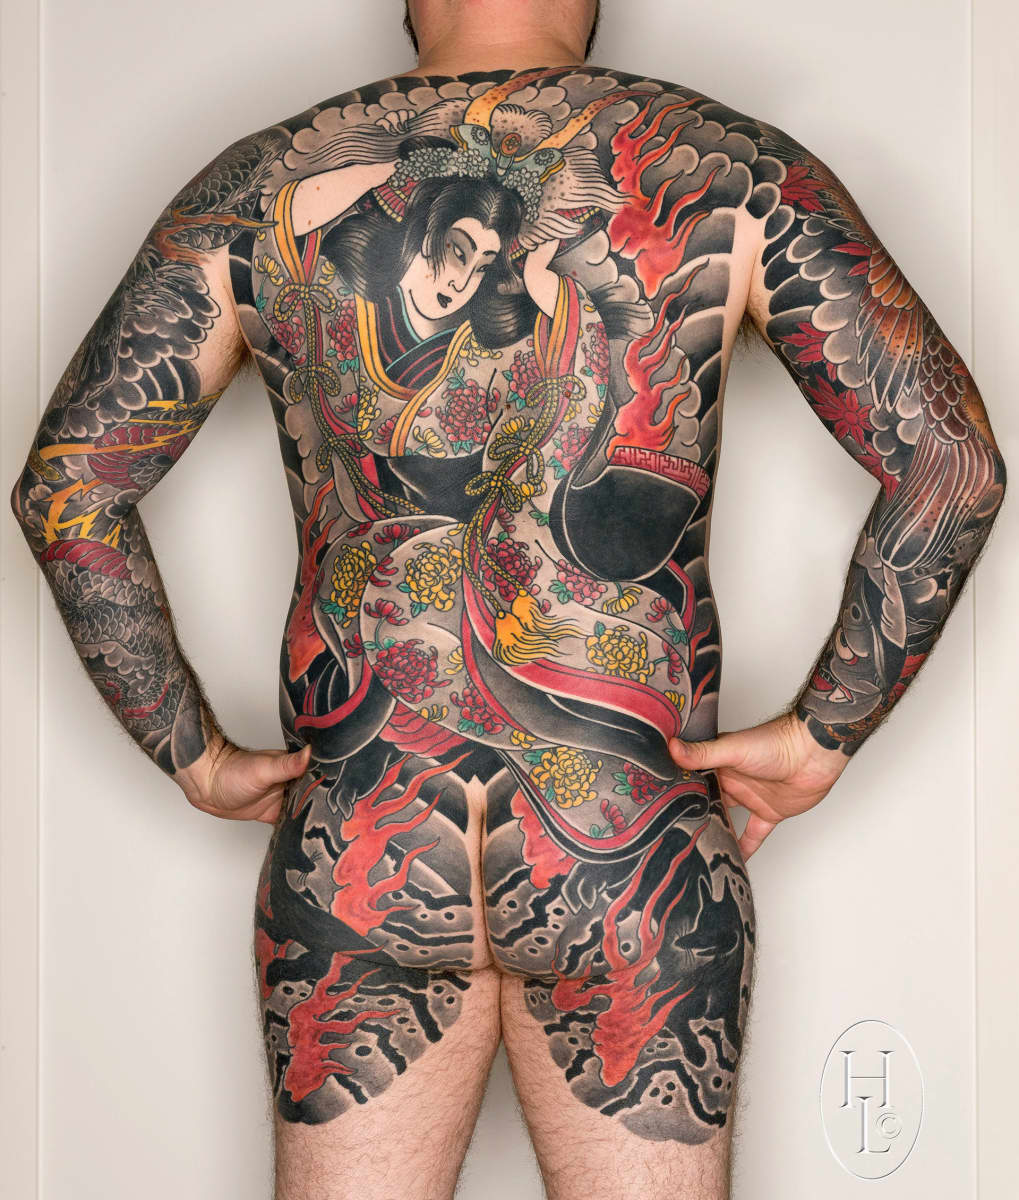 Larjasto ei halua laittaa kuvaamiaan tatuointeja paremmuusjärjestykseen, mutta nostaa yhdeksi hienoimmista tämän japanilaisten puupiirrosten mukaan tehdyn kuvan.